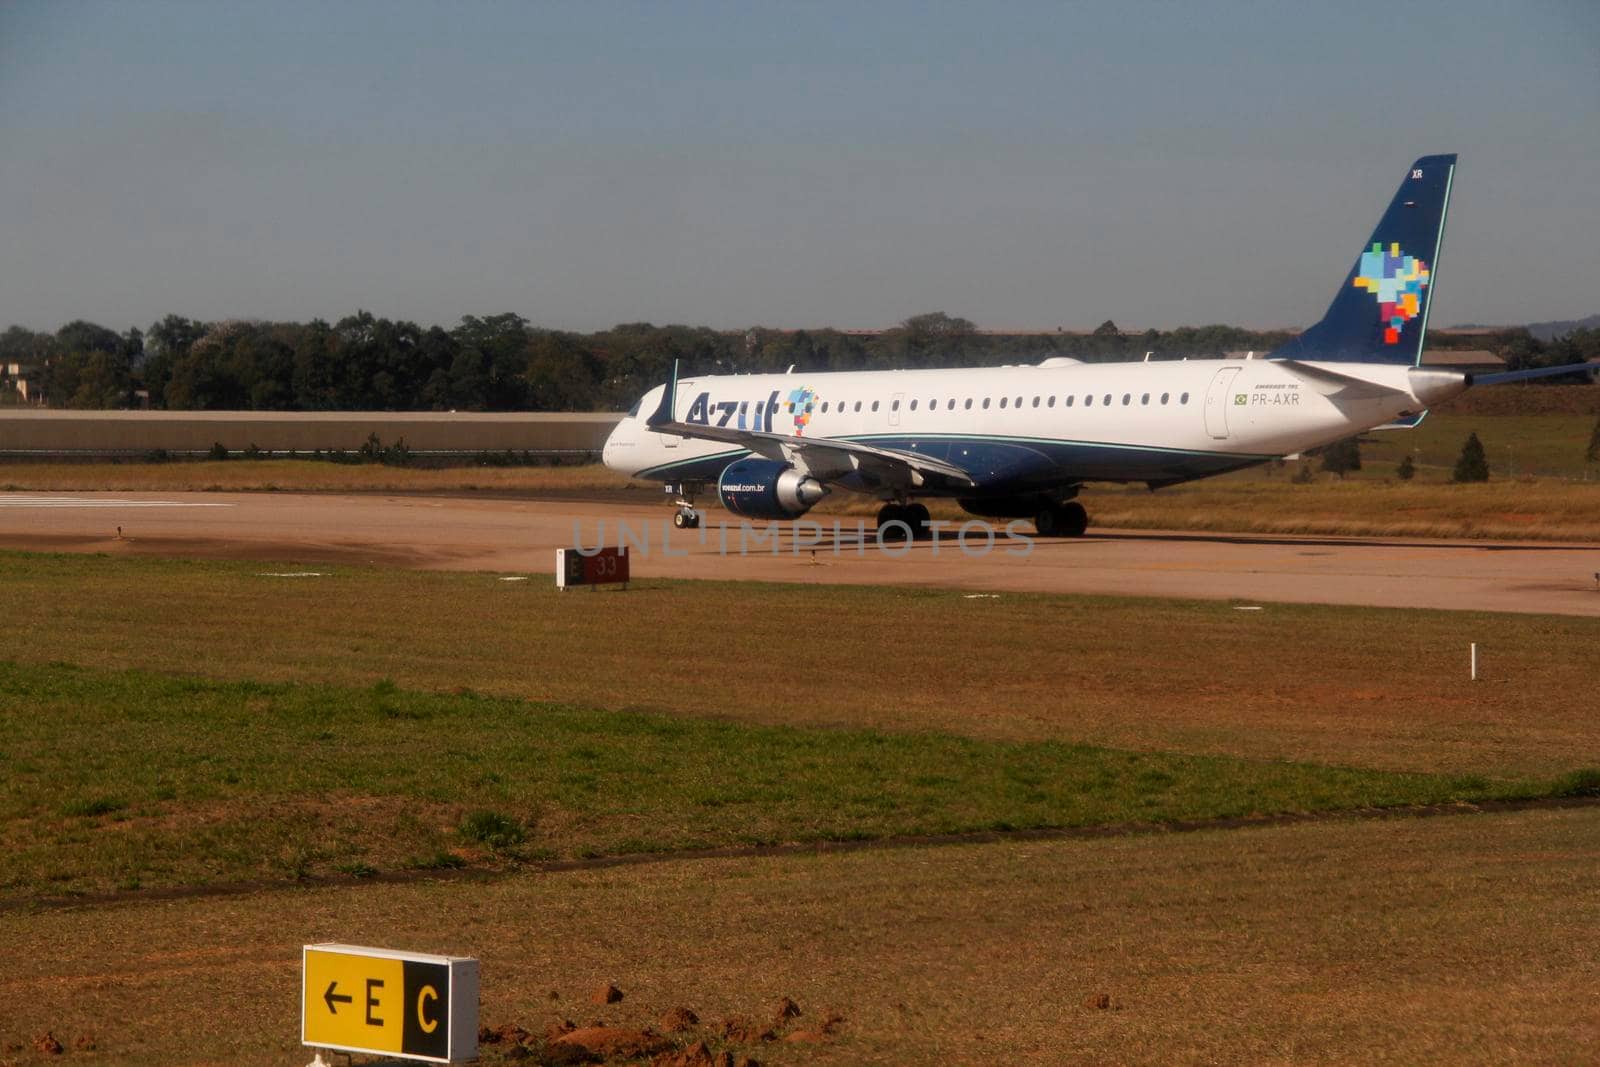 campinas, sao paulo / brazil - july 30, 2013: Azul Linhas Aereas Embraer 195 aircraft is seen at Campinas International Airport.

